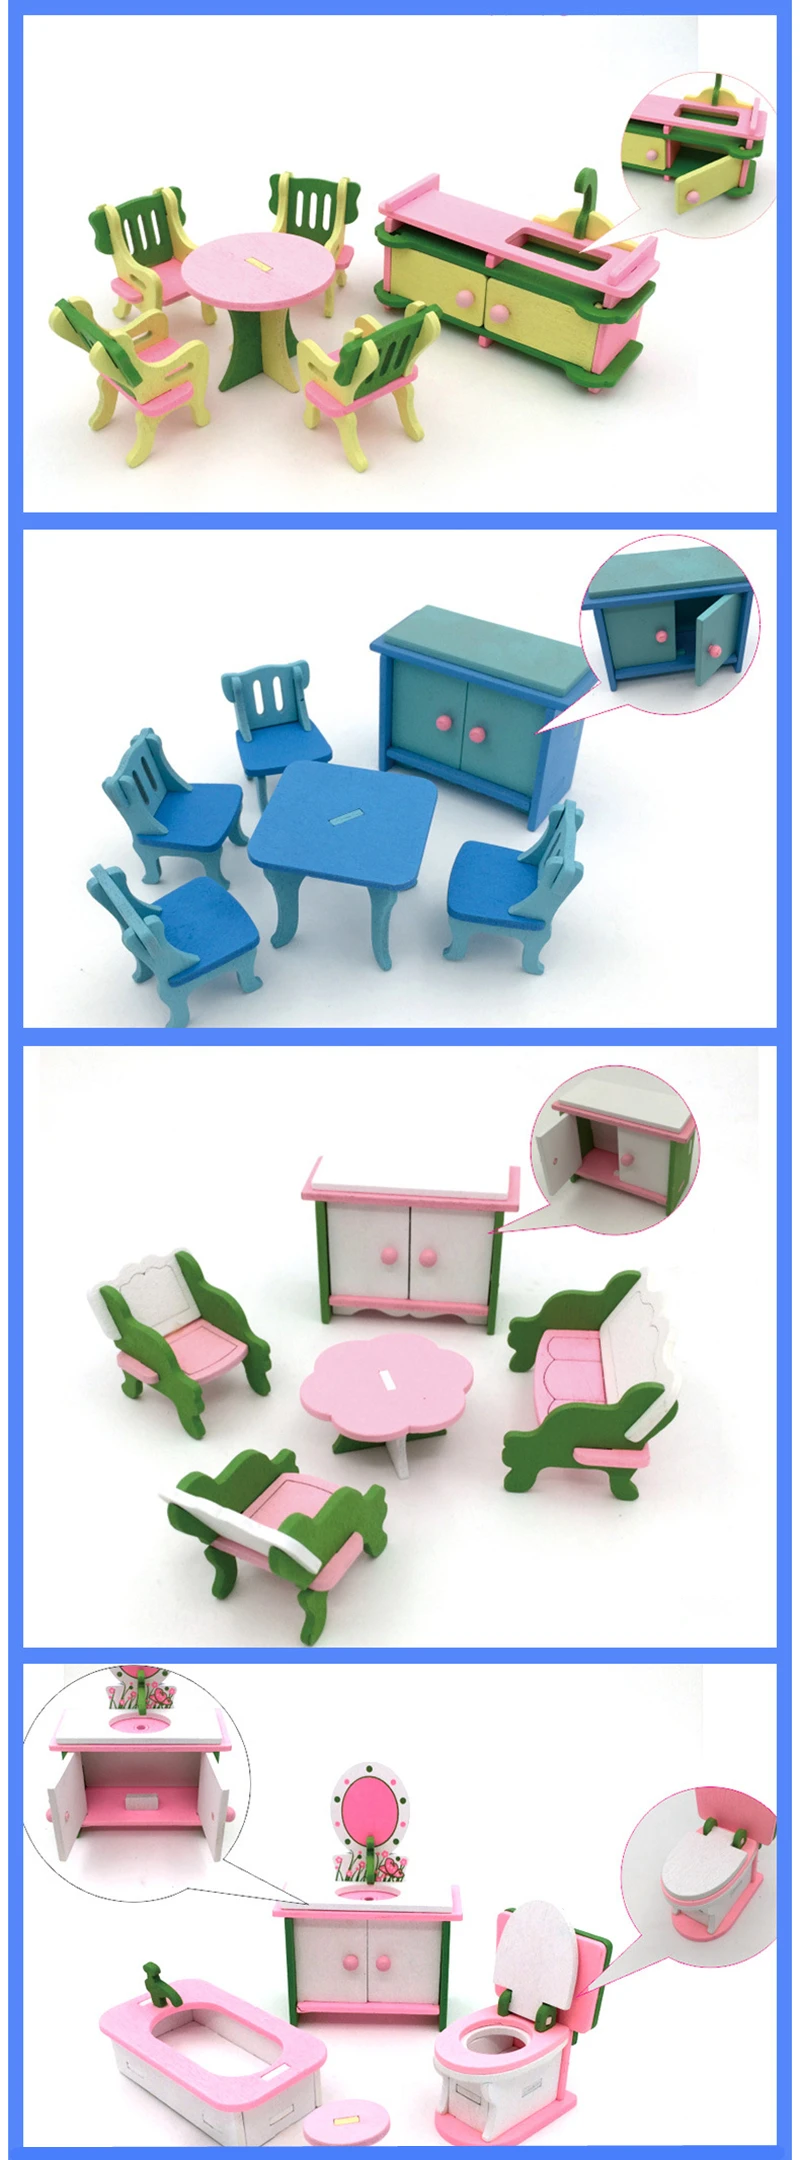 Кукольный домик Миниатюрные игровые игрушки детский набор деревянные строительные блоки игрушки индивидуальность креативная кухонная мебель стол